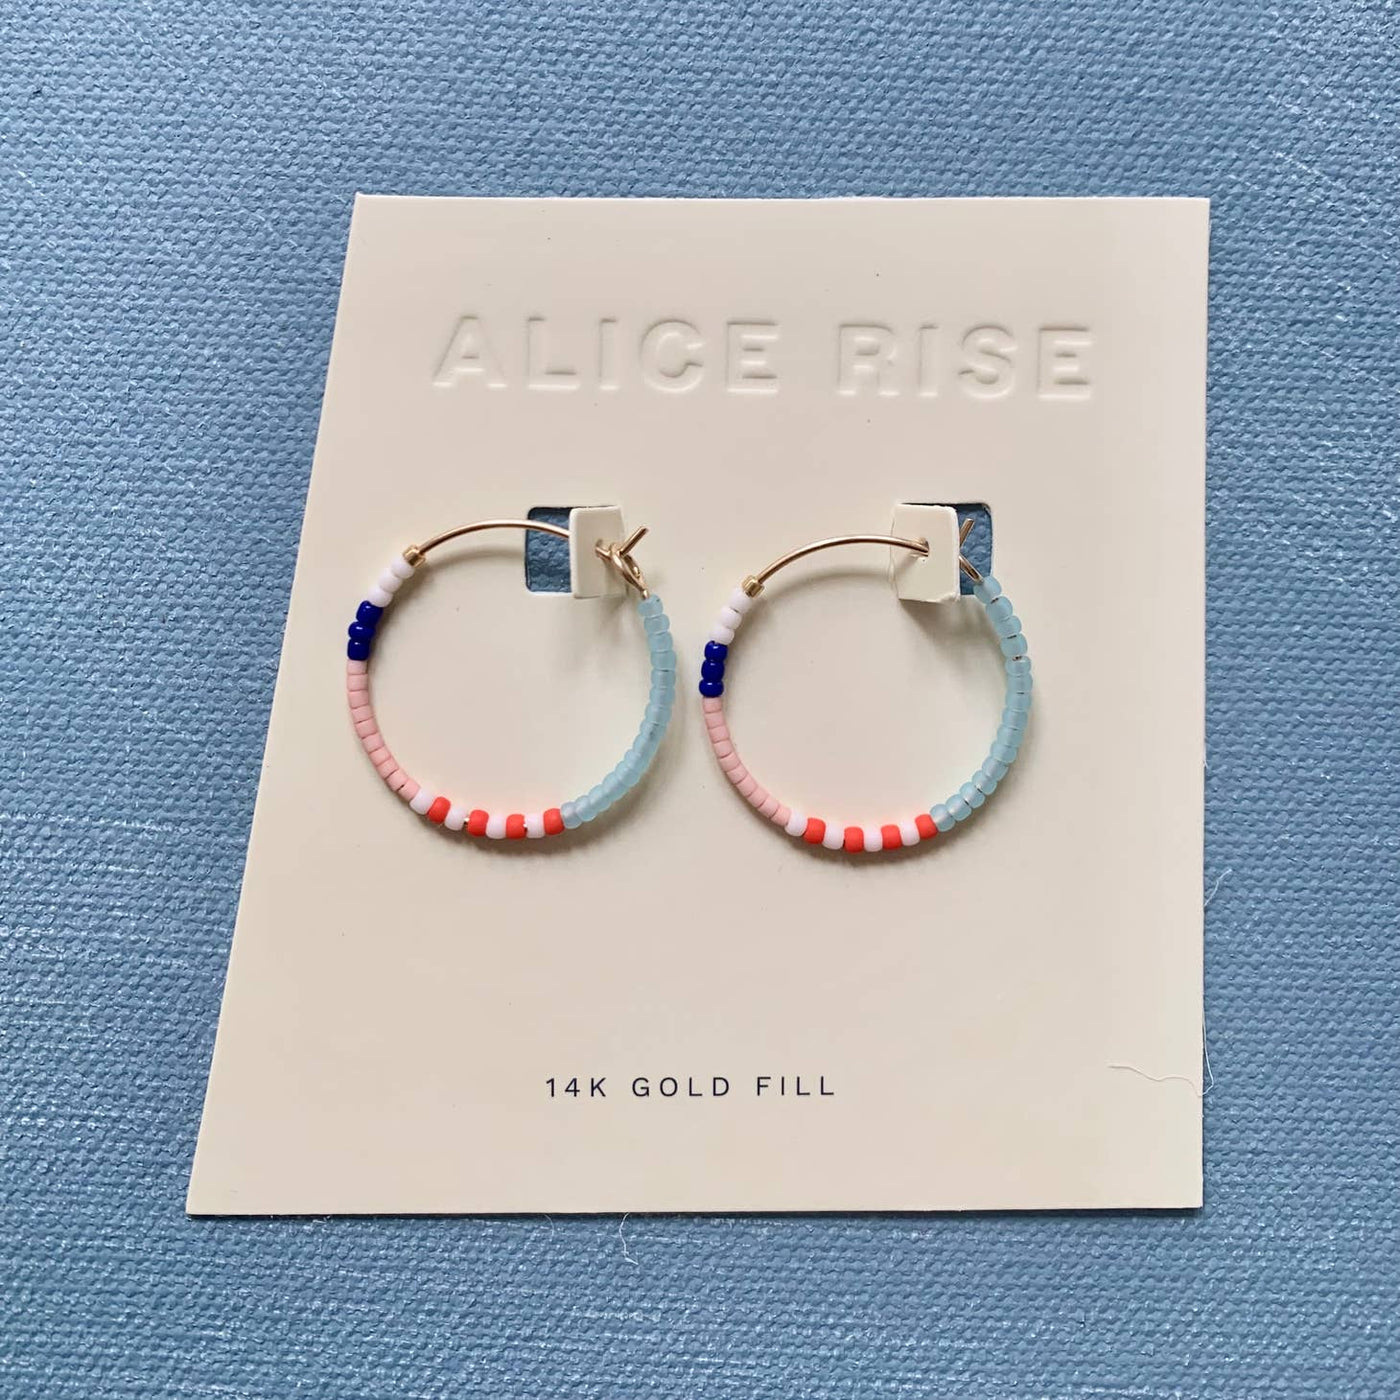 little color loop hoop earrings by alice rise on a card